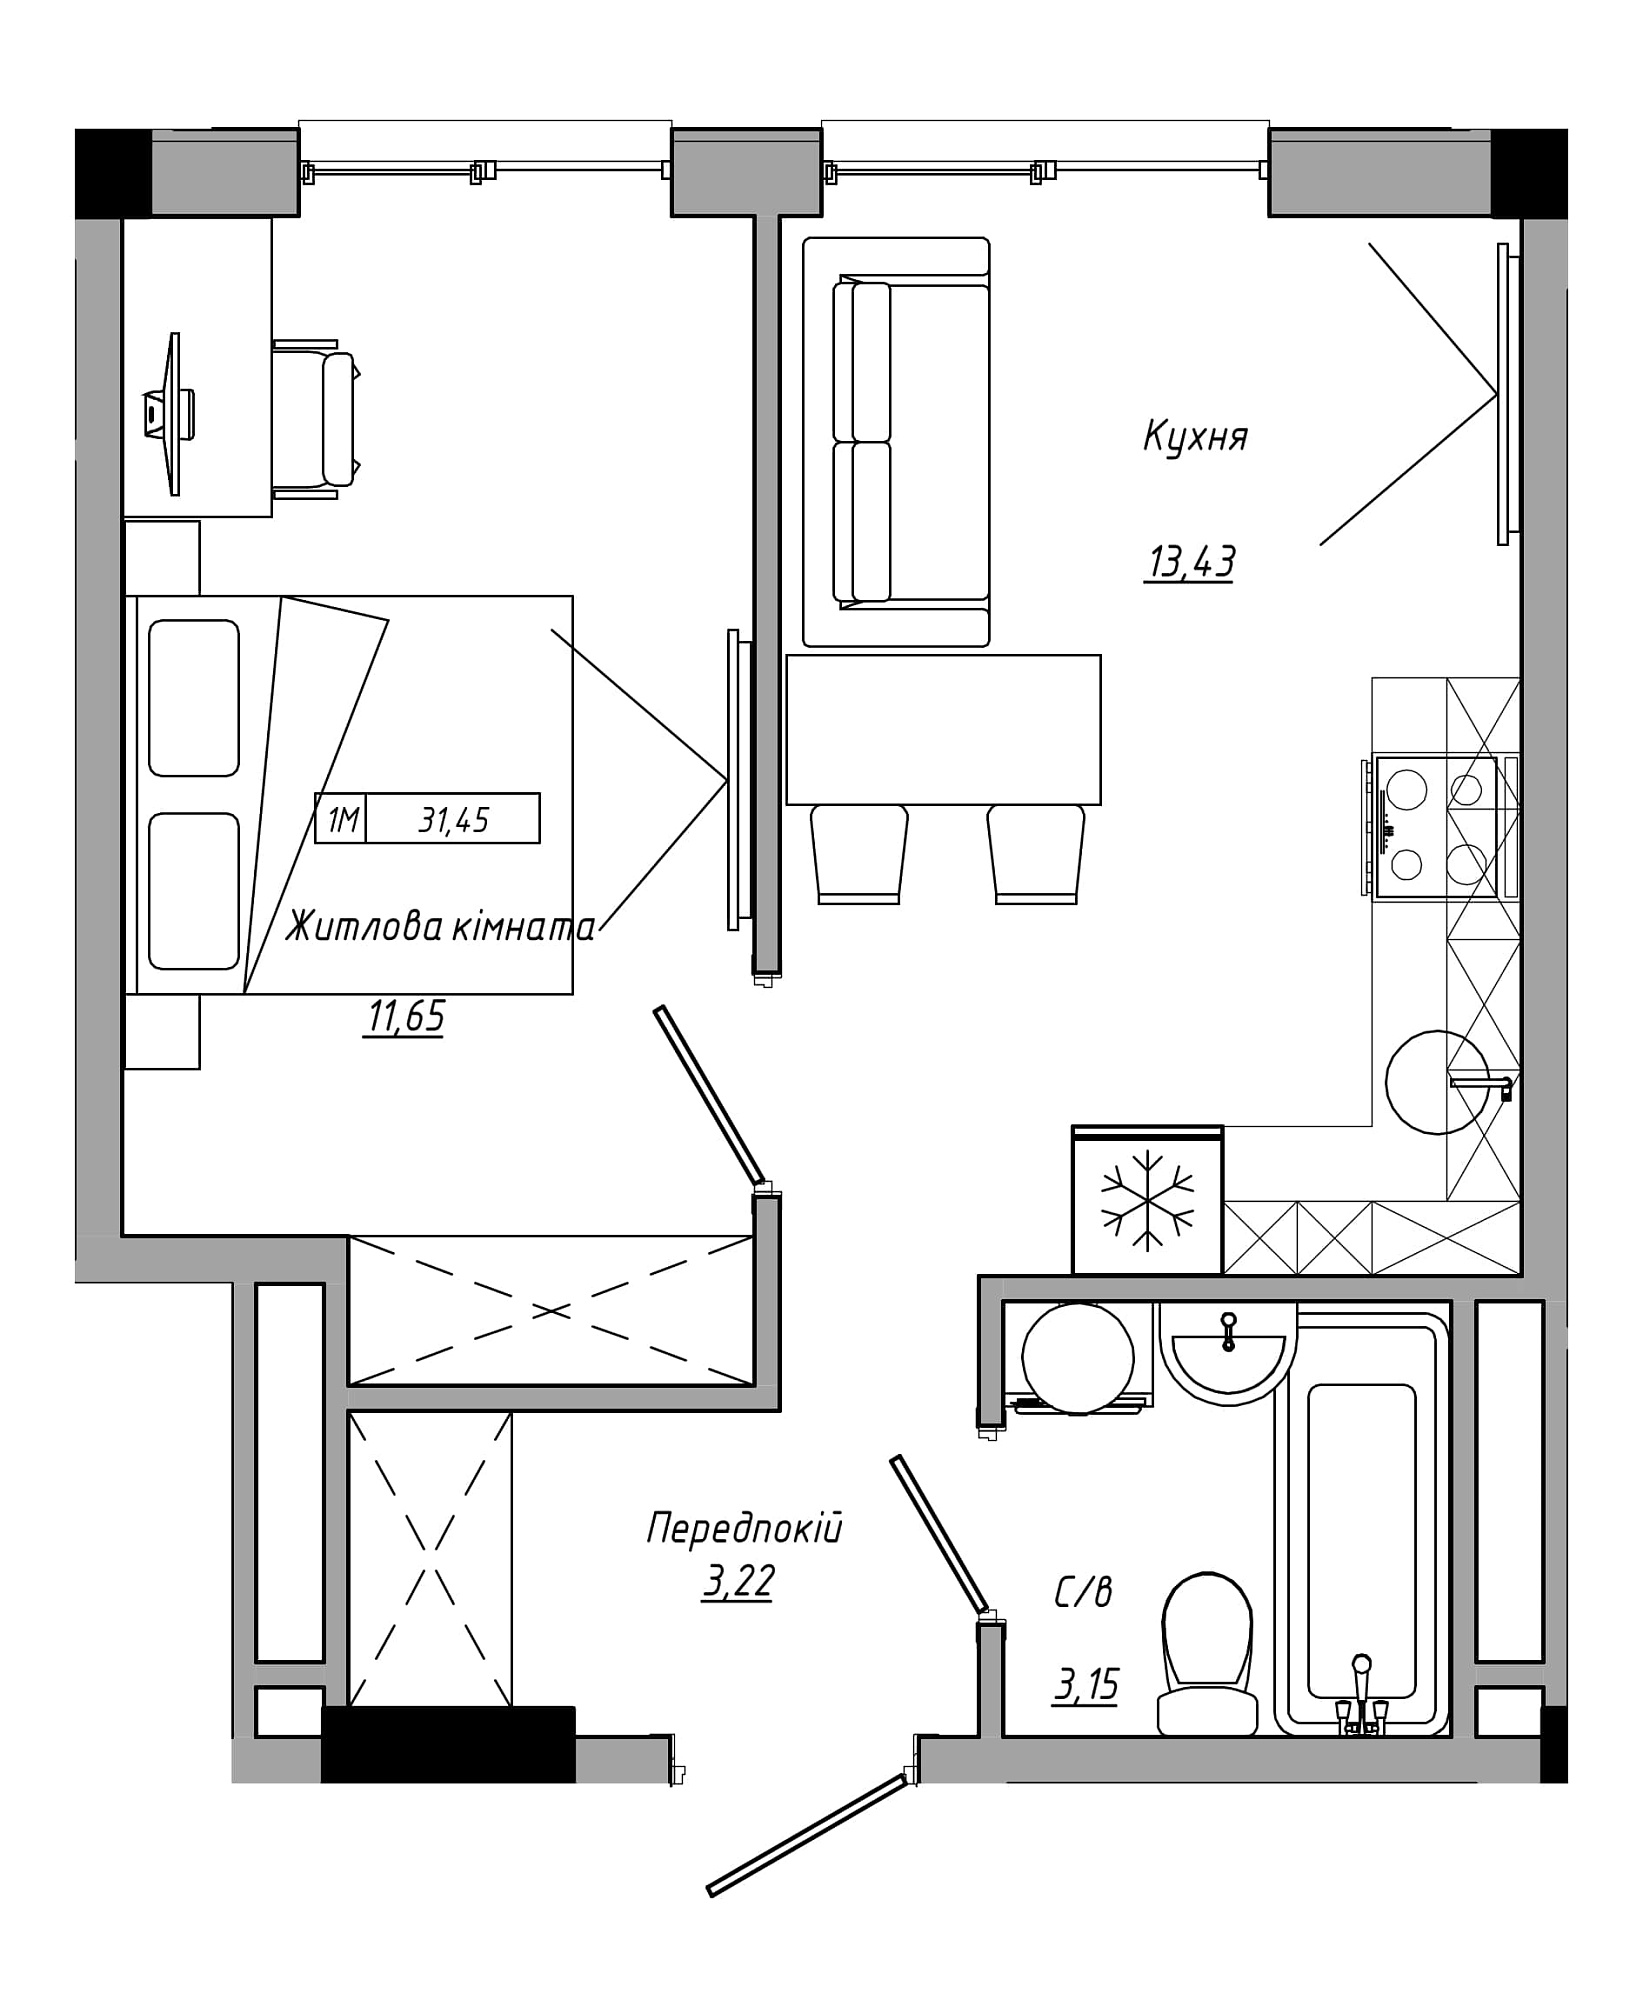 Планування 1-к квартира площею 31.45м2, AB-21-12/00015.